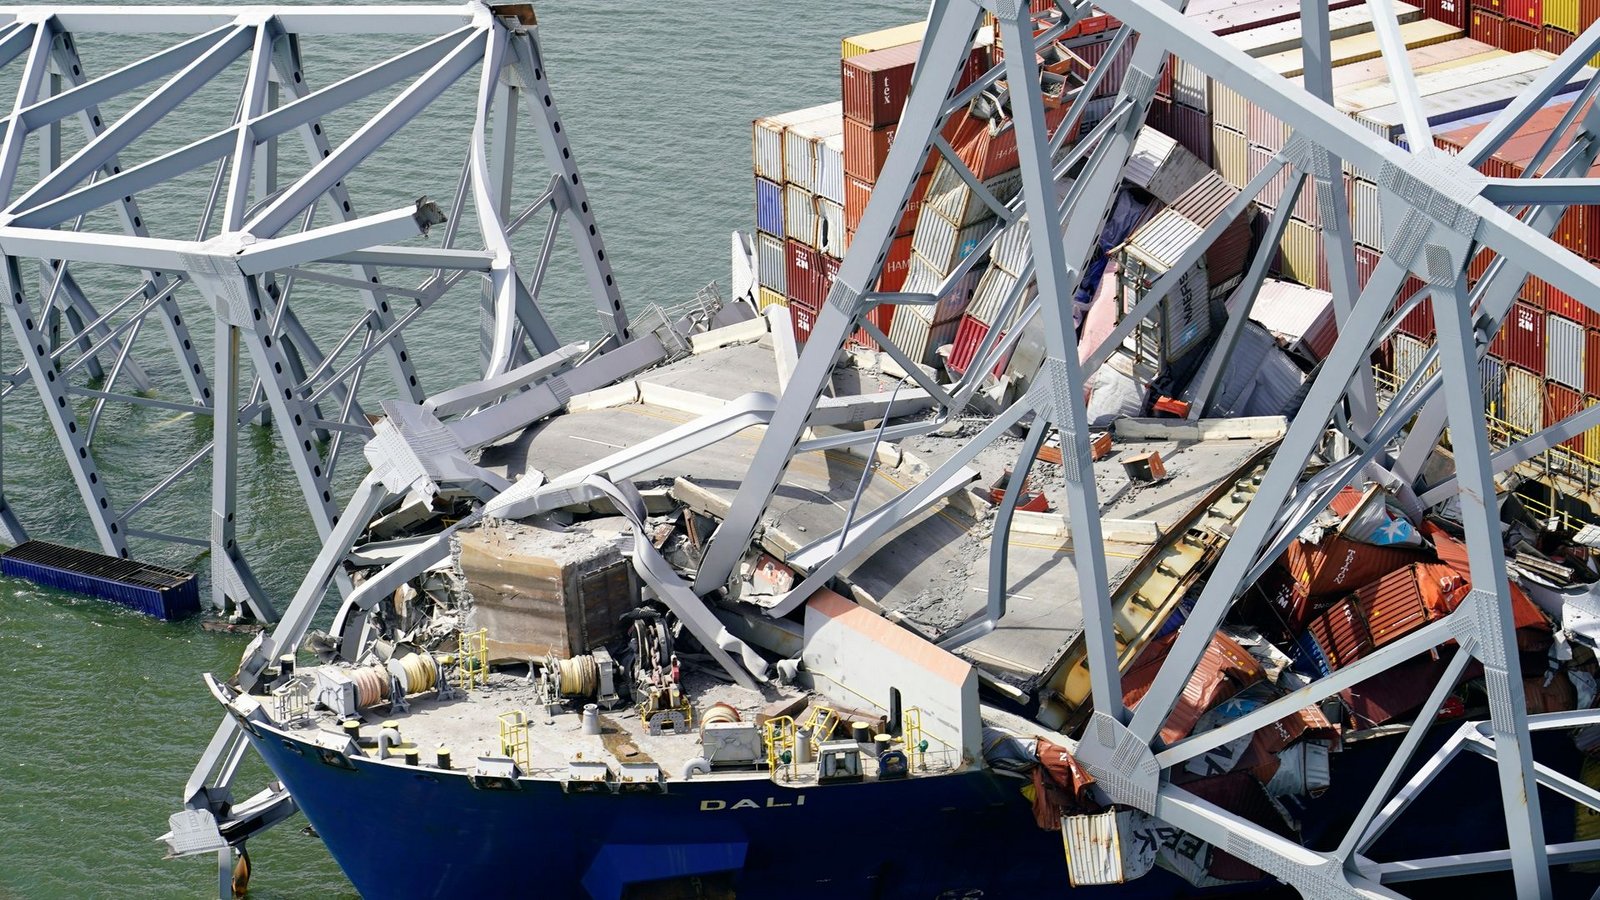 Zur Schiffsladung gehörten 56 Container mit gefährlichen Materialien, etwa ätzende oder entzündliche Stoffe.Foto: Uncredited/Maryland National Guard/AP/dpa